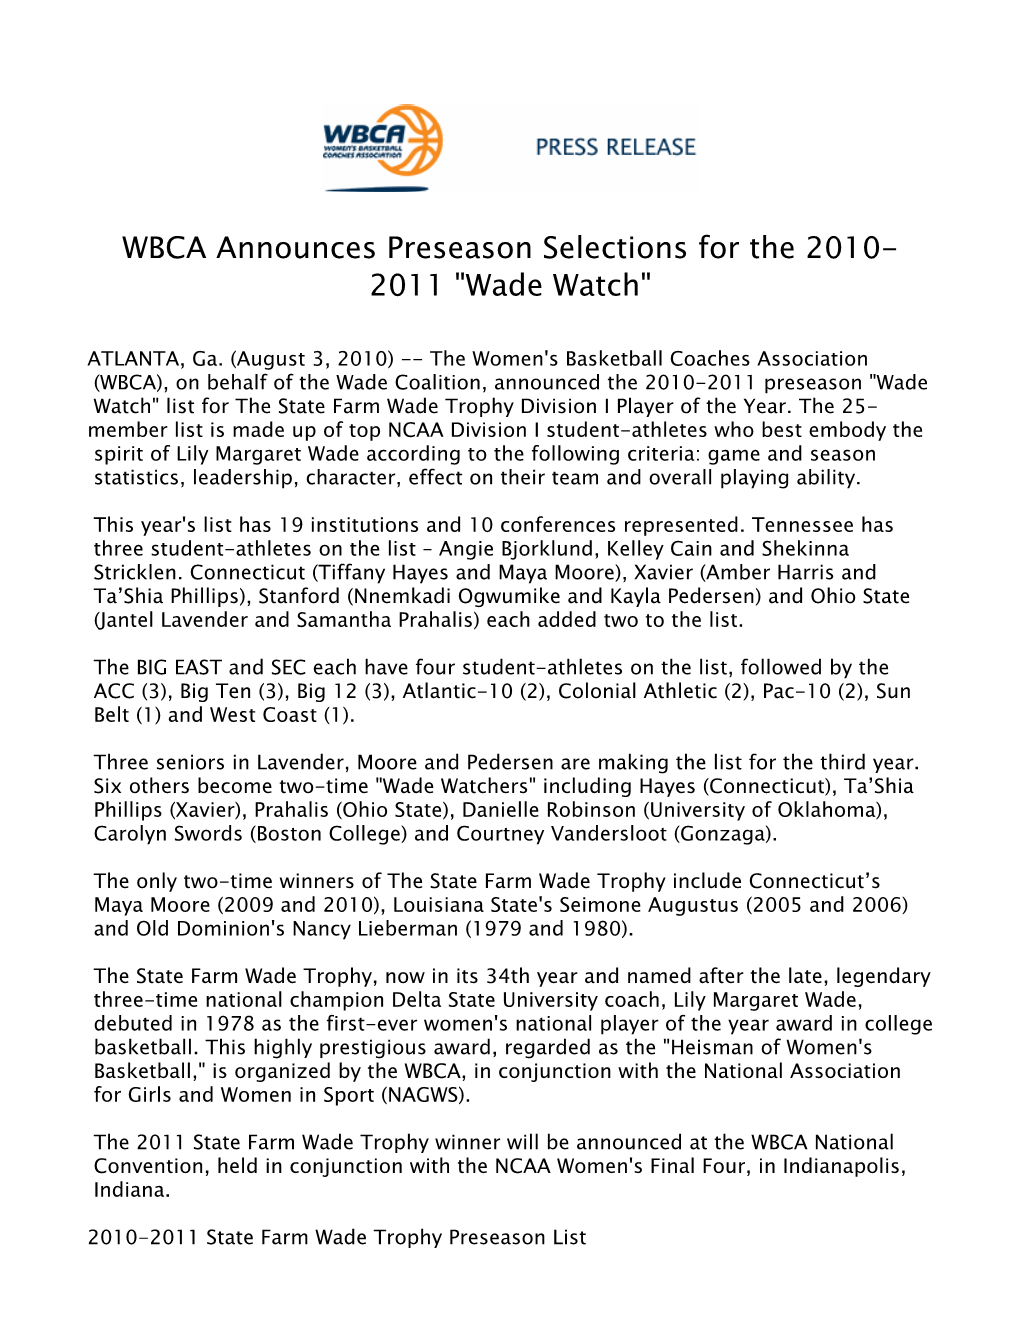 WBCA Announces Preseason Selections for the 2010-2011